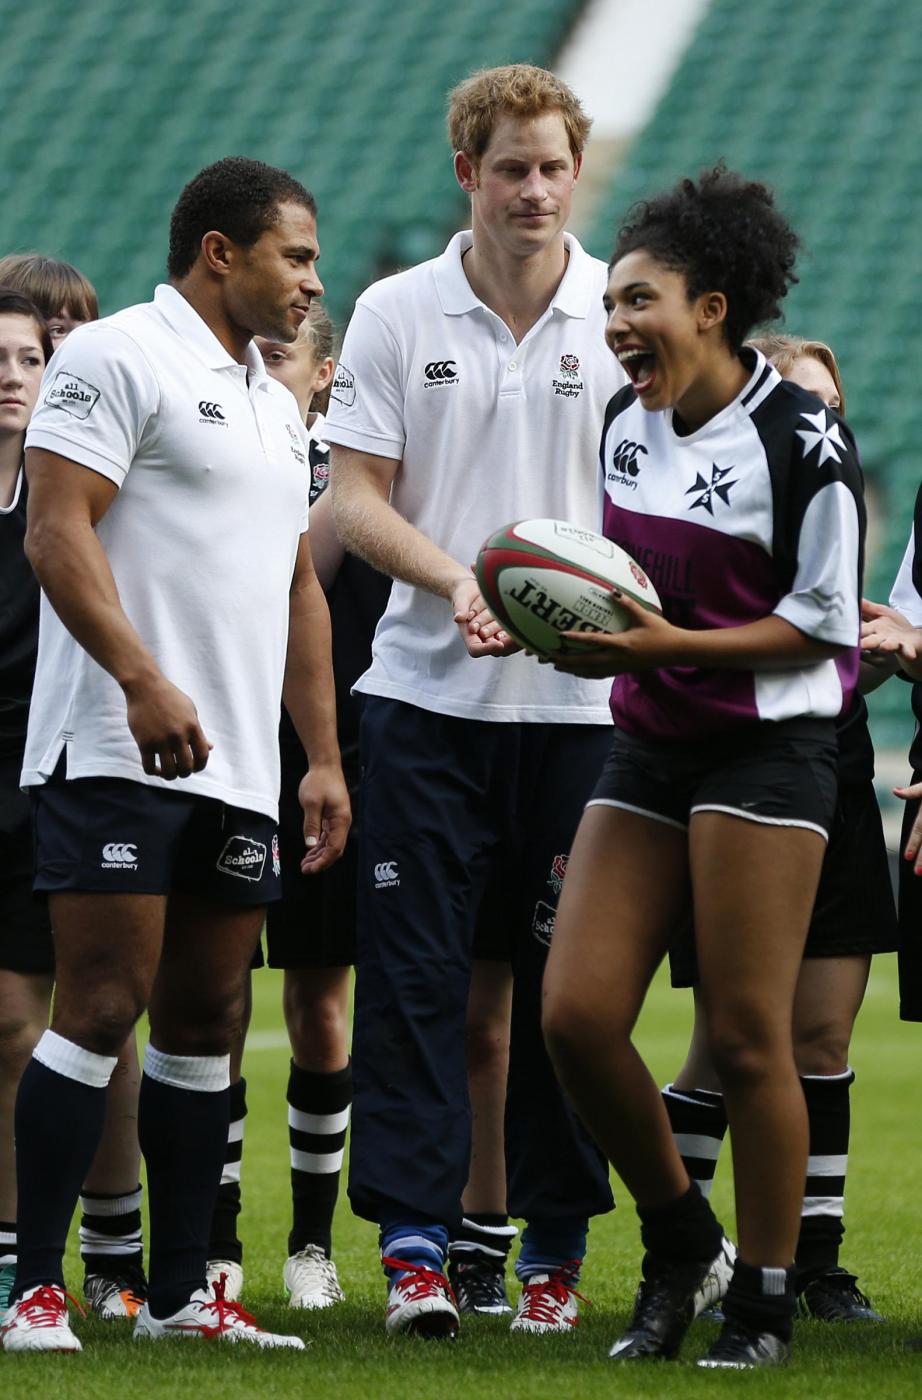 Londra, il Principe Harry gioca a rugby con..delle ragazze02